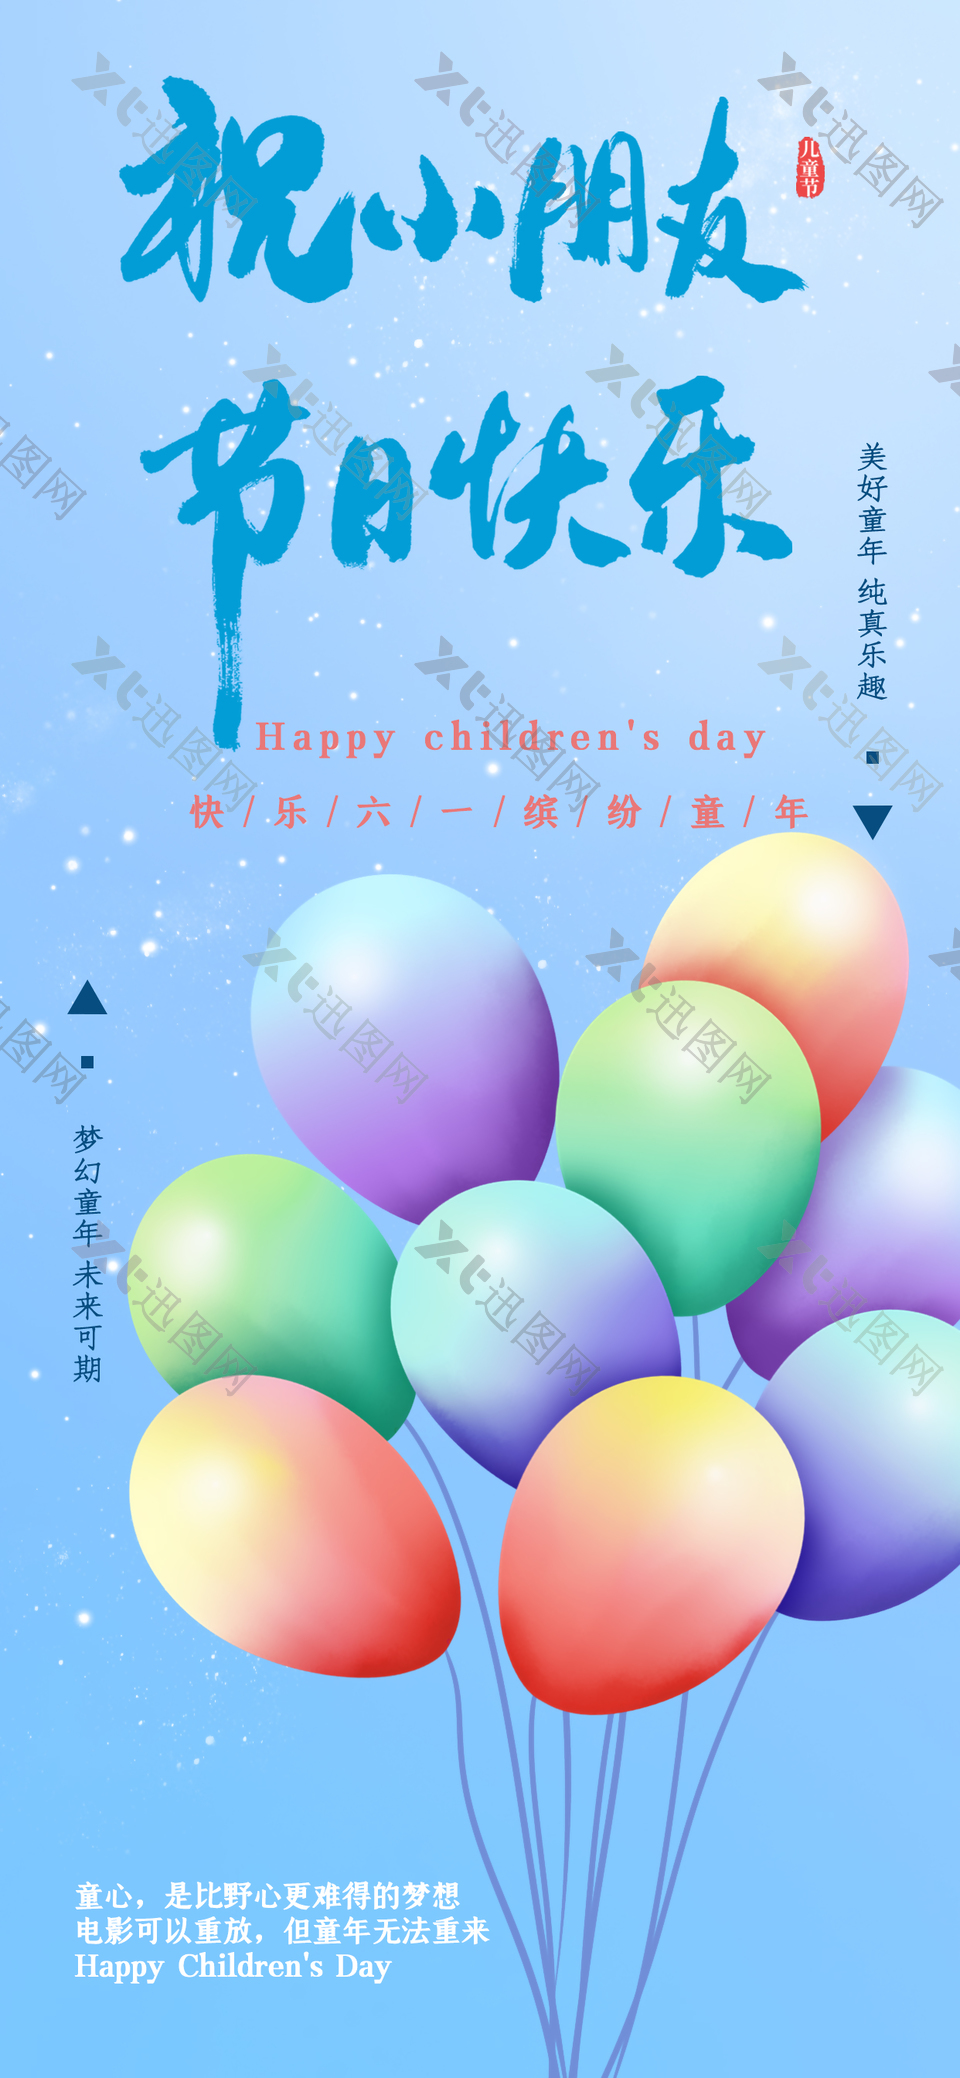 祝小朋友节日快乐彩色气球蓝色海报